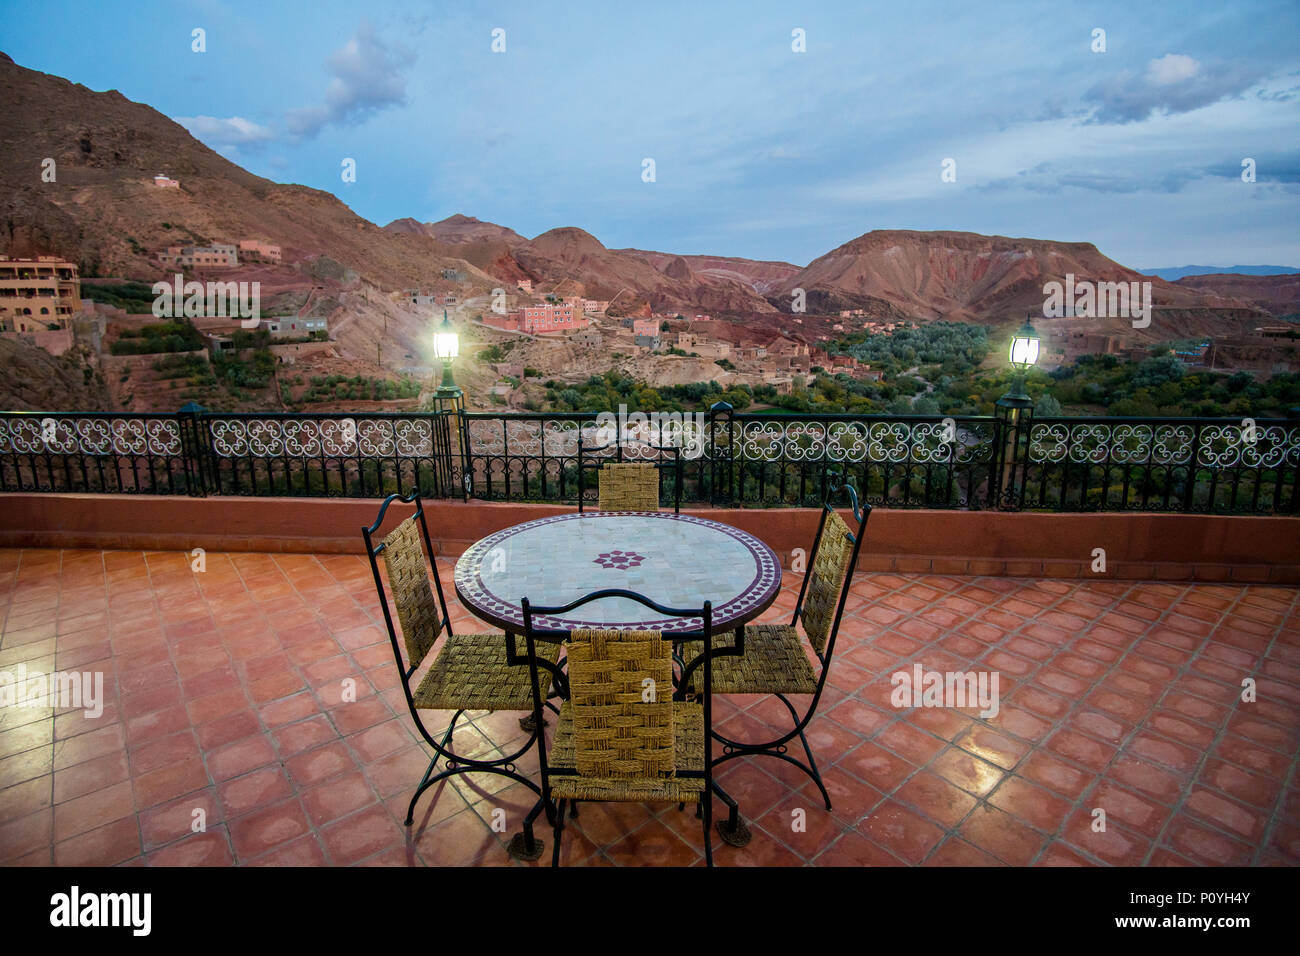 Tisch mit 4 Stühlen auf der Terrasse in Dades Tal in der Nähe von Boumalne Dades Dorf in Marokko. Blaue Stunde shot mit Bergen im Hintergrund Stockfoto